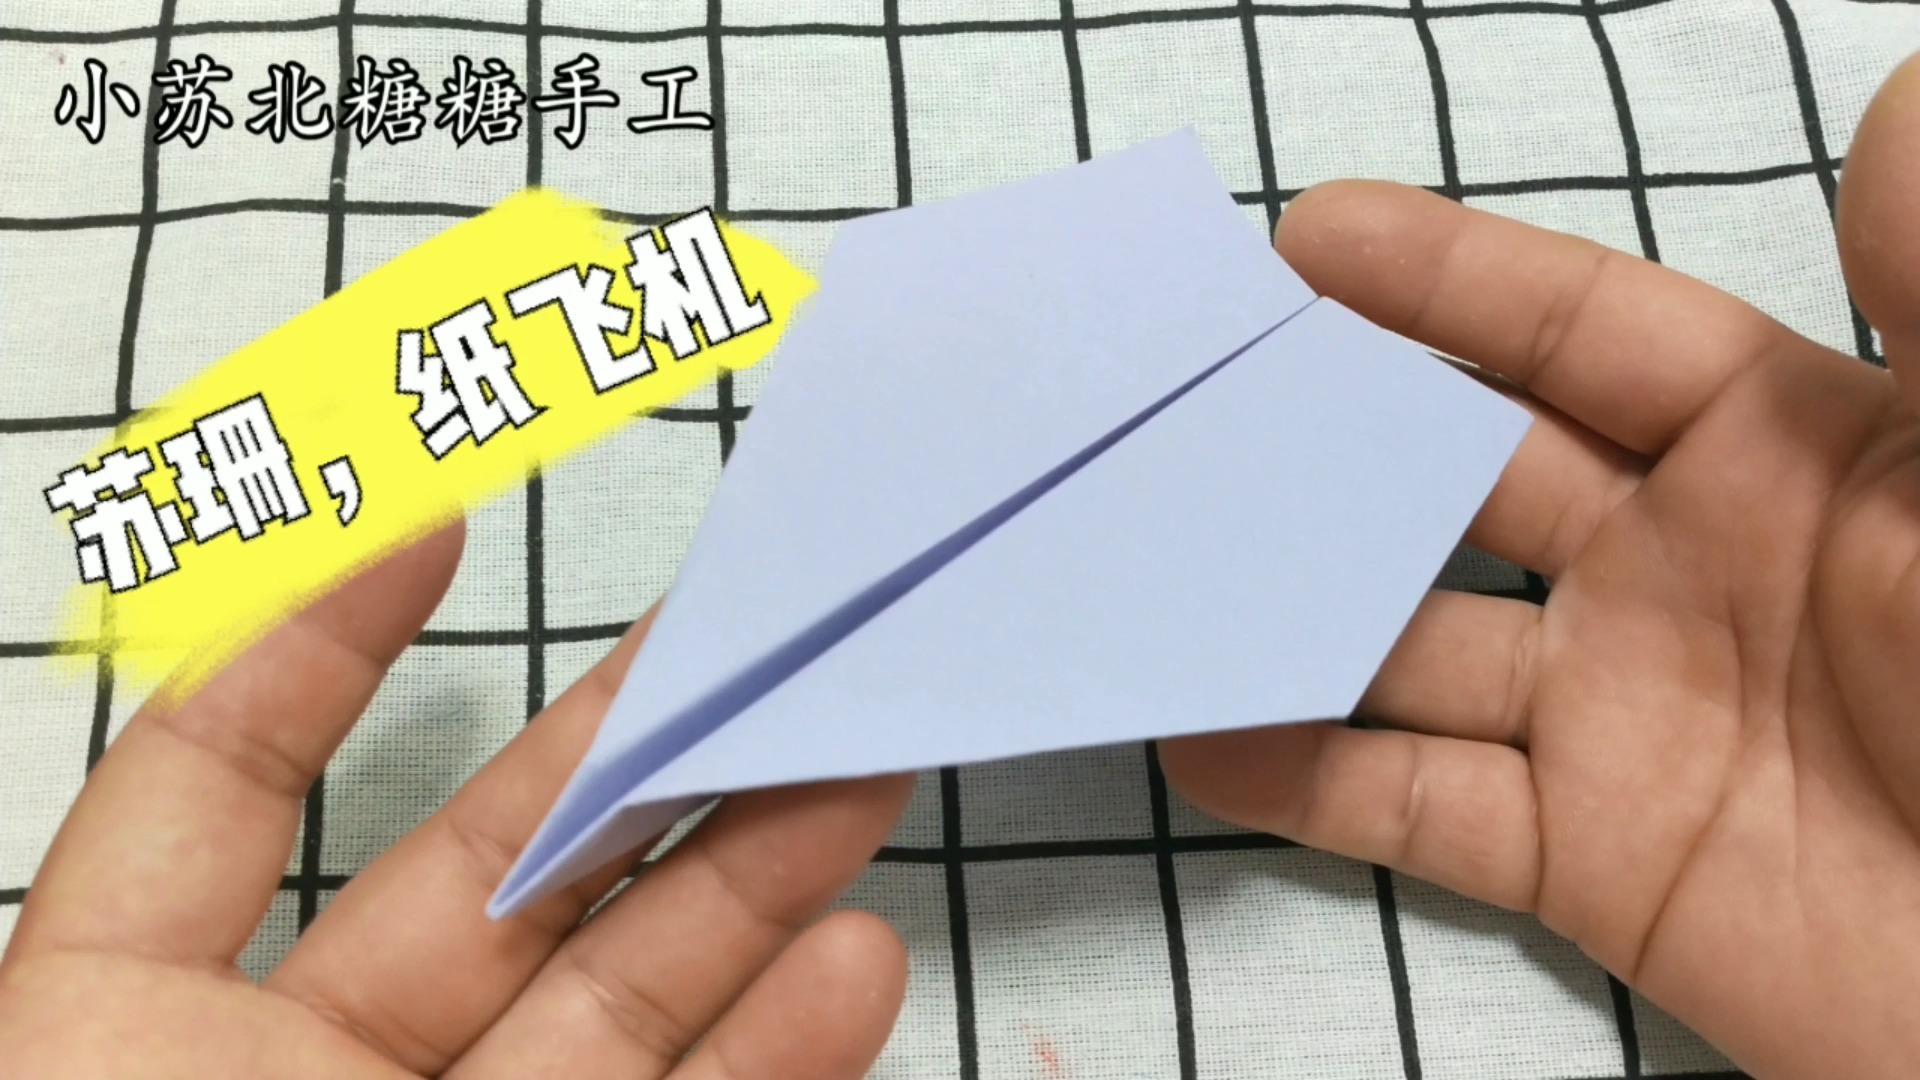 纸飞机中文语言包链接-telegreat简体中文语言包